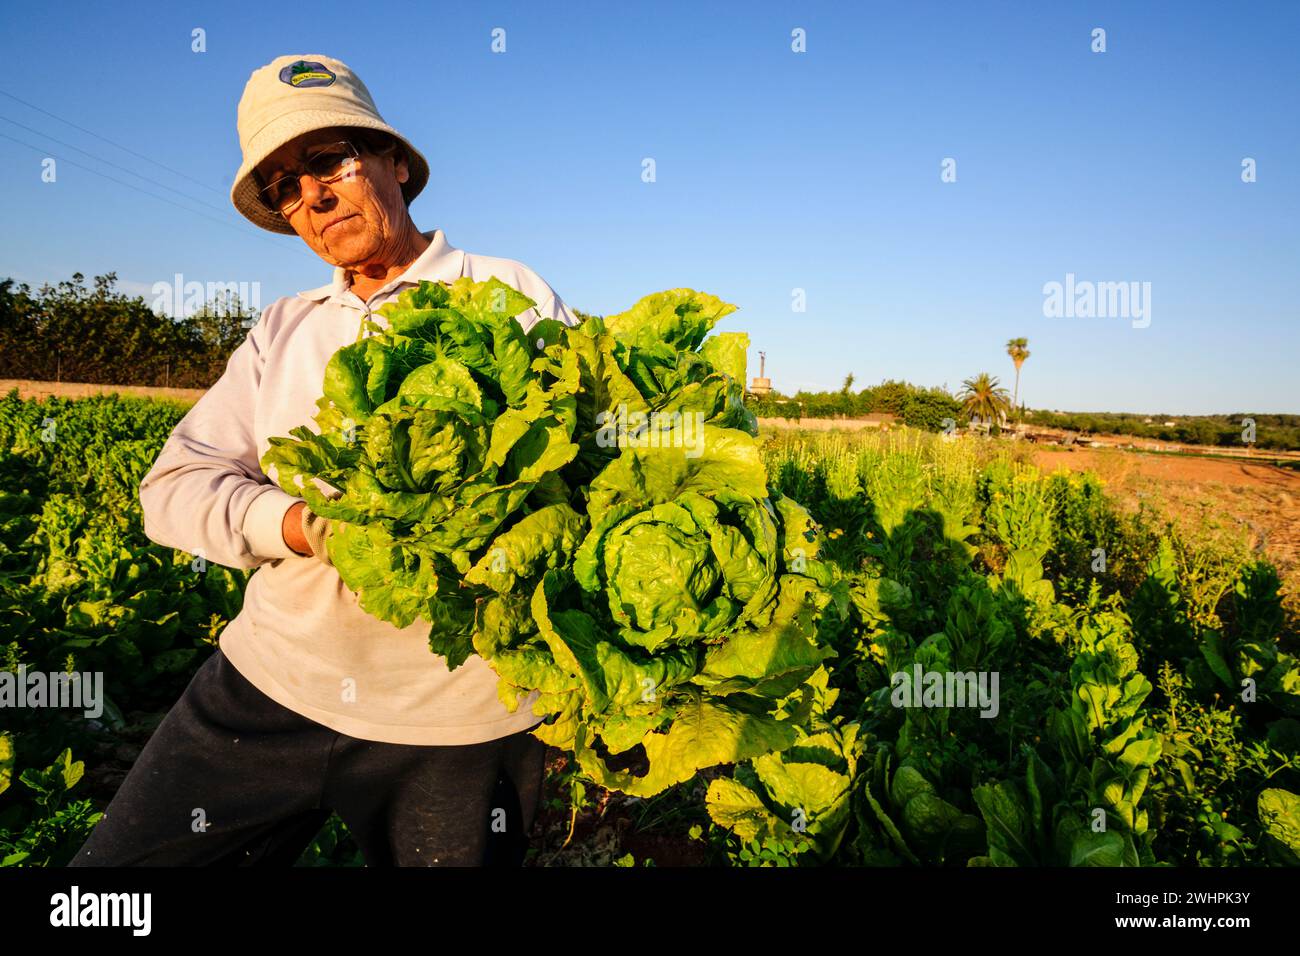 Agricultora en un campo de cultivo Stock Photo